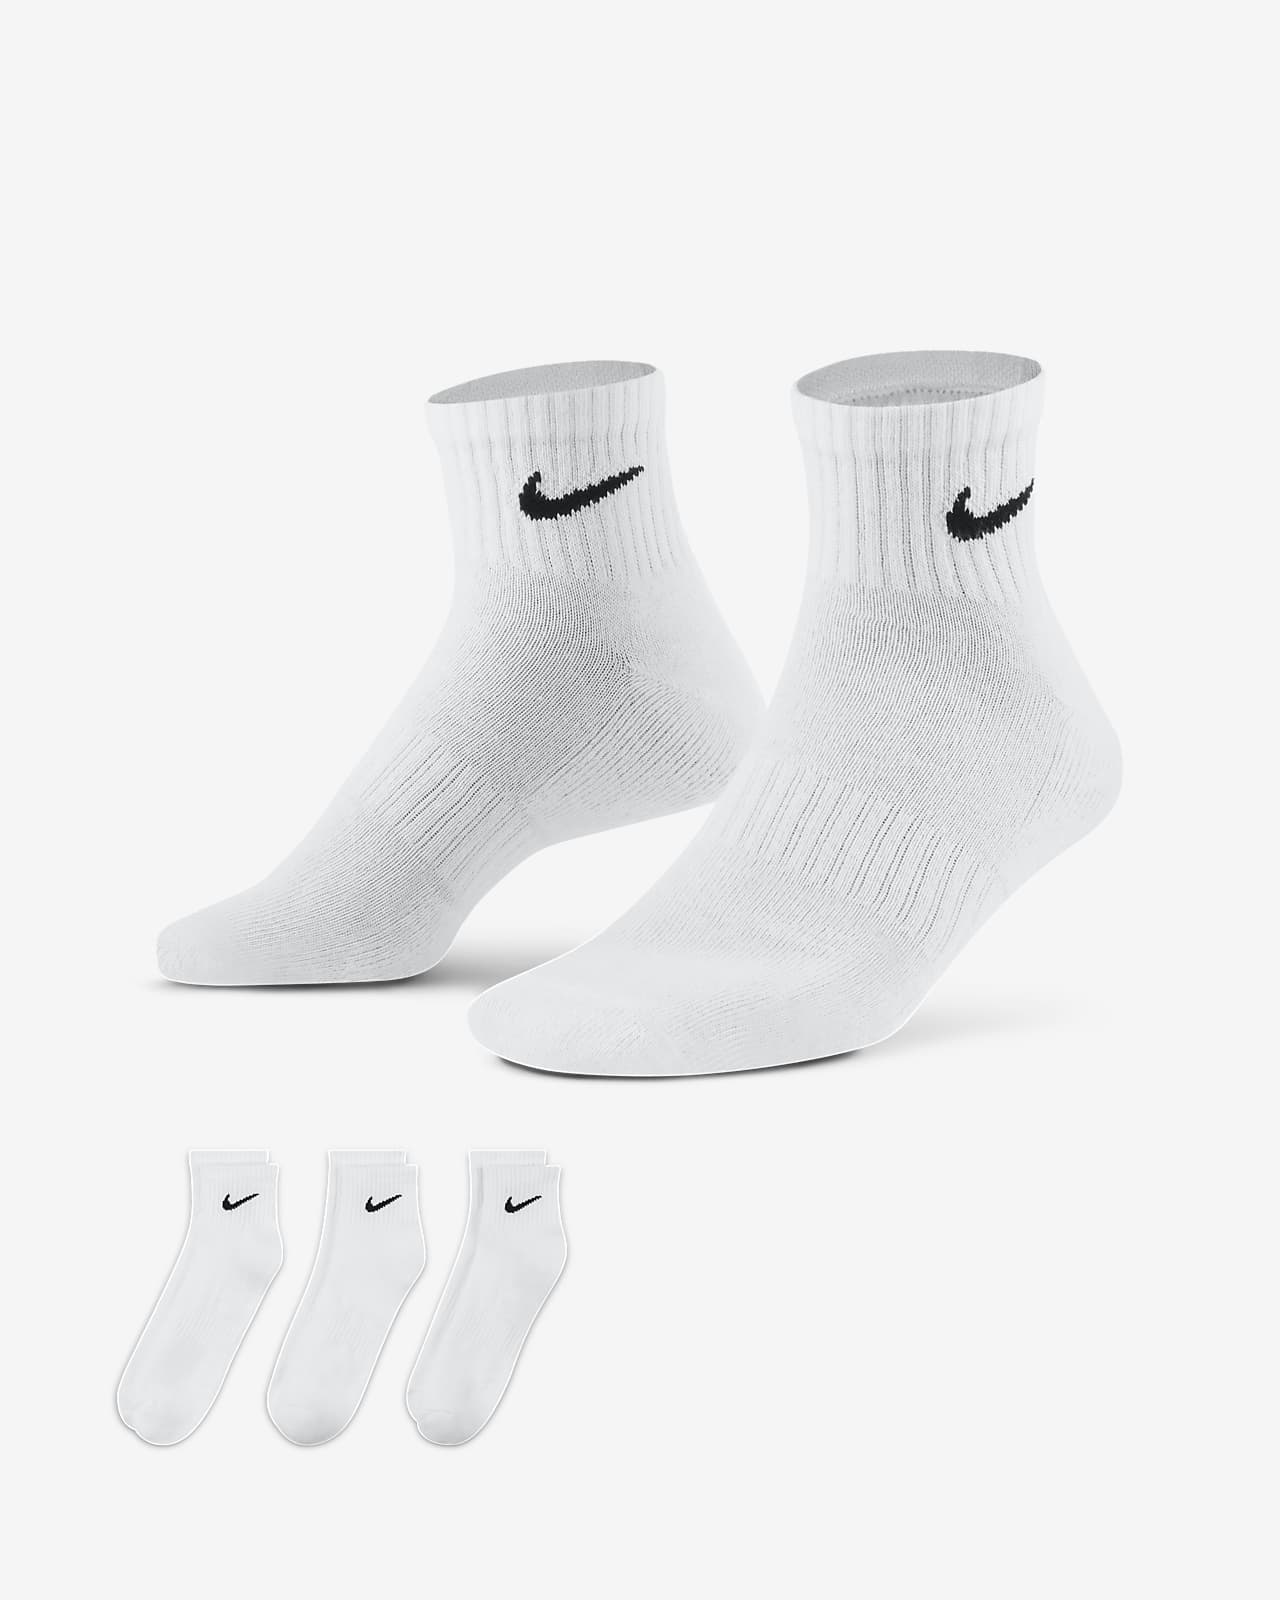 Calze da training alla caviglia Nike Everyday Cushioned (3 paia)